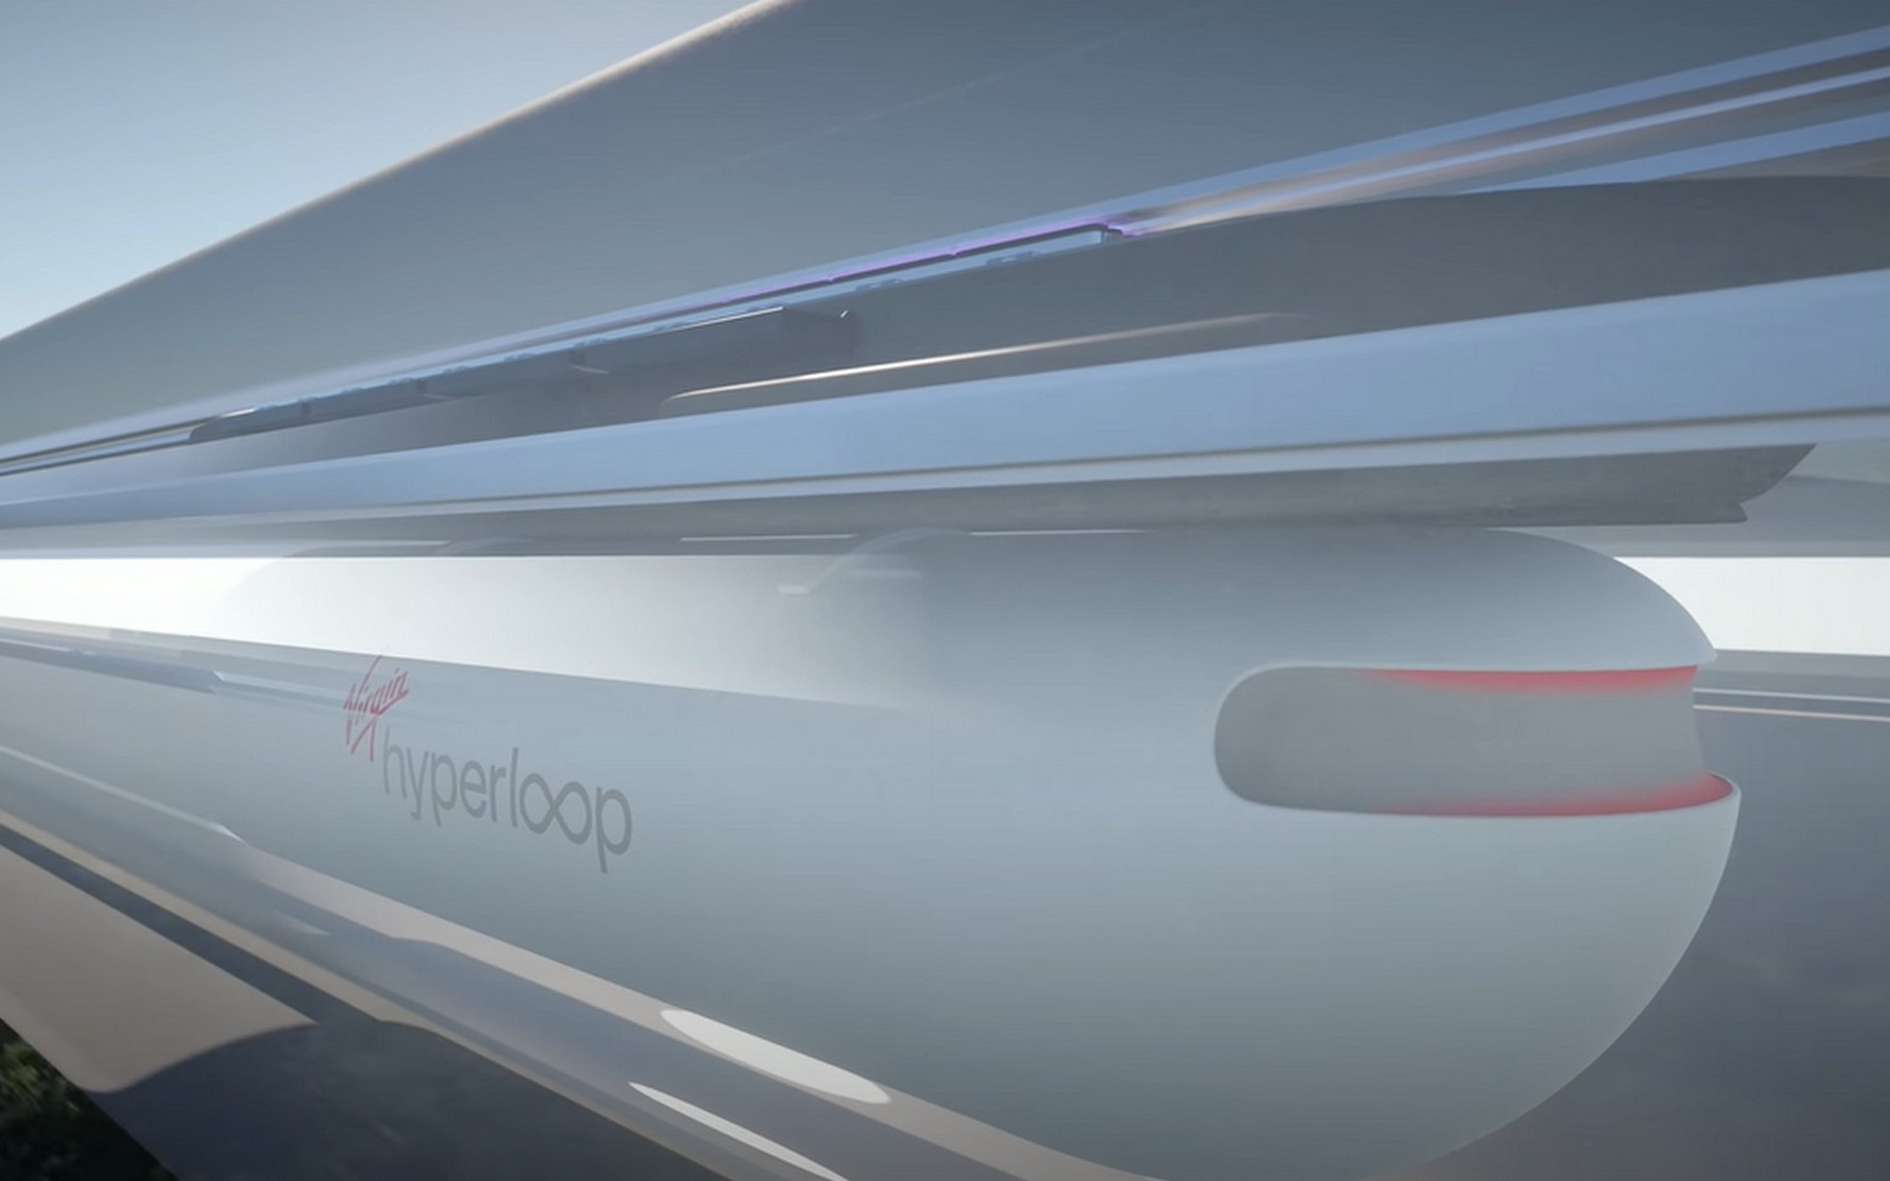 La navette Virgin Hyperloop serait suspendue à son système de propulsion à lévitation magnétique. © Virgin Hyperloop